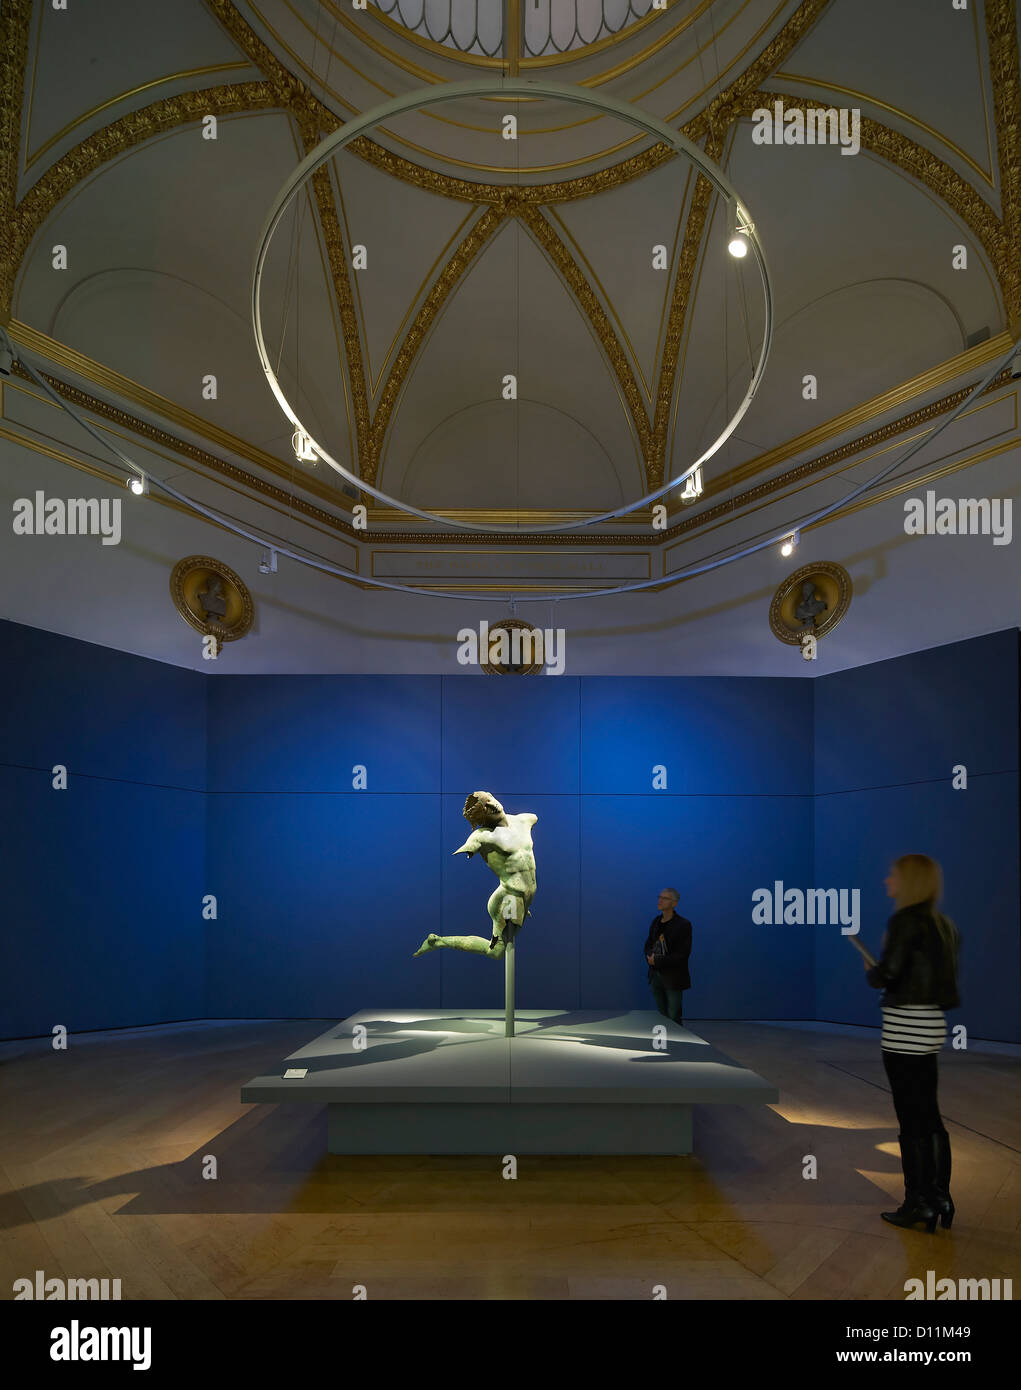 Royal Academy mostra di bronzo, Londra, Regno Unito. Architetto: Stanton Williams, 2012. Camera blu con il Satiro danzante. Foto Stock